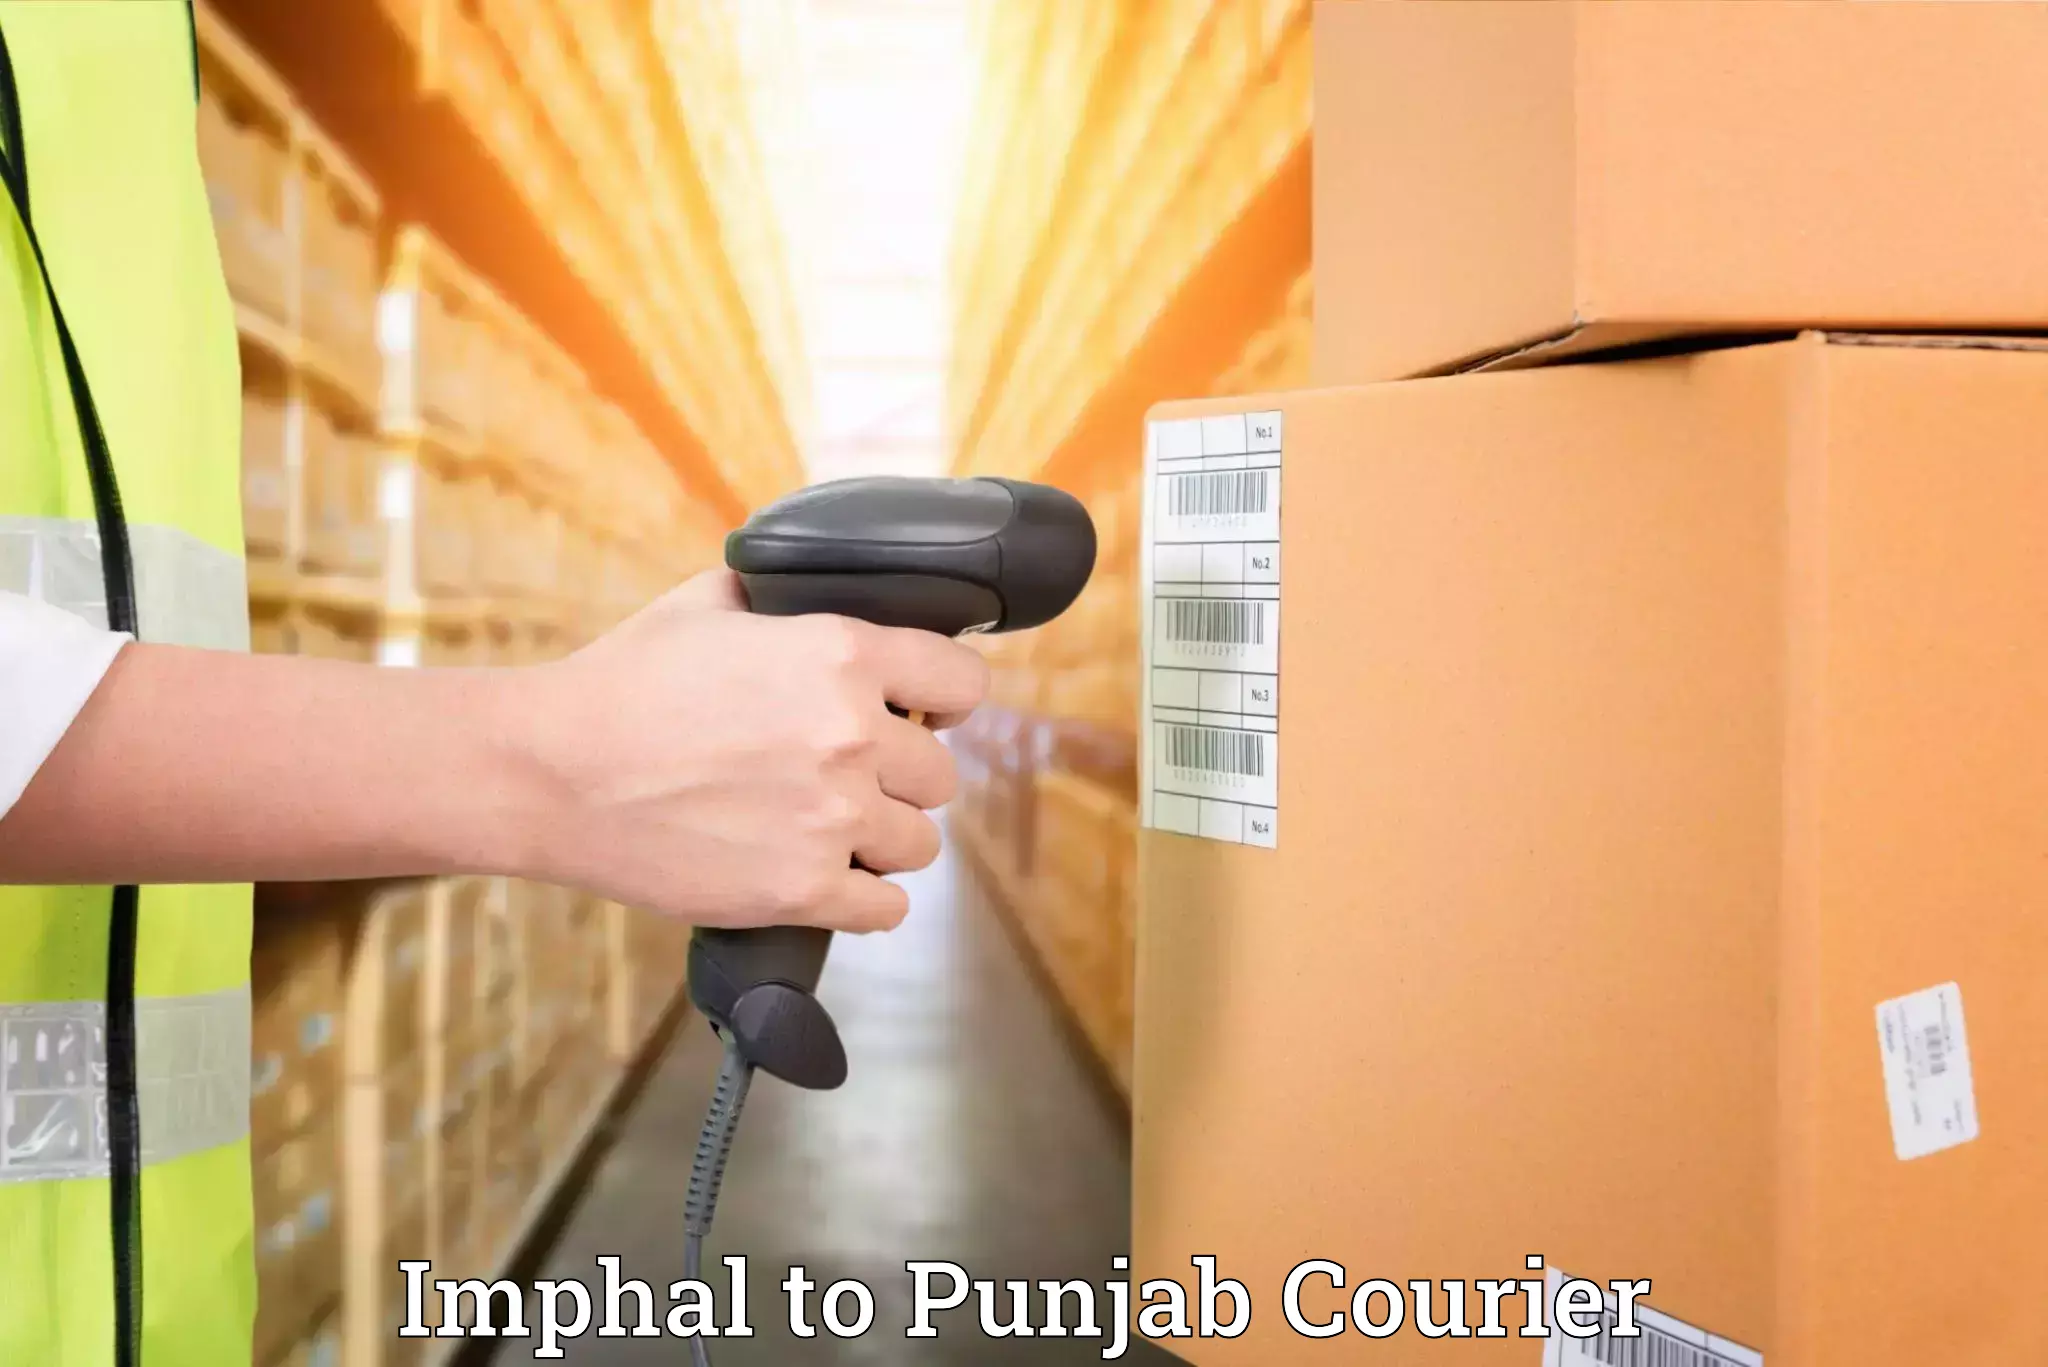 Furniture transport experts Imphal to Punjab